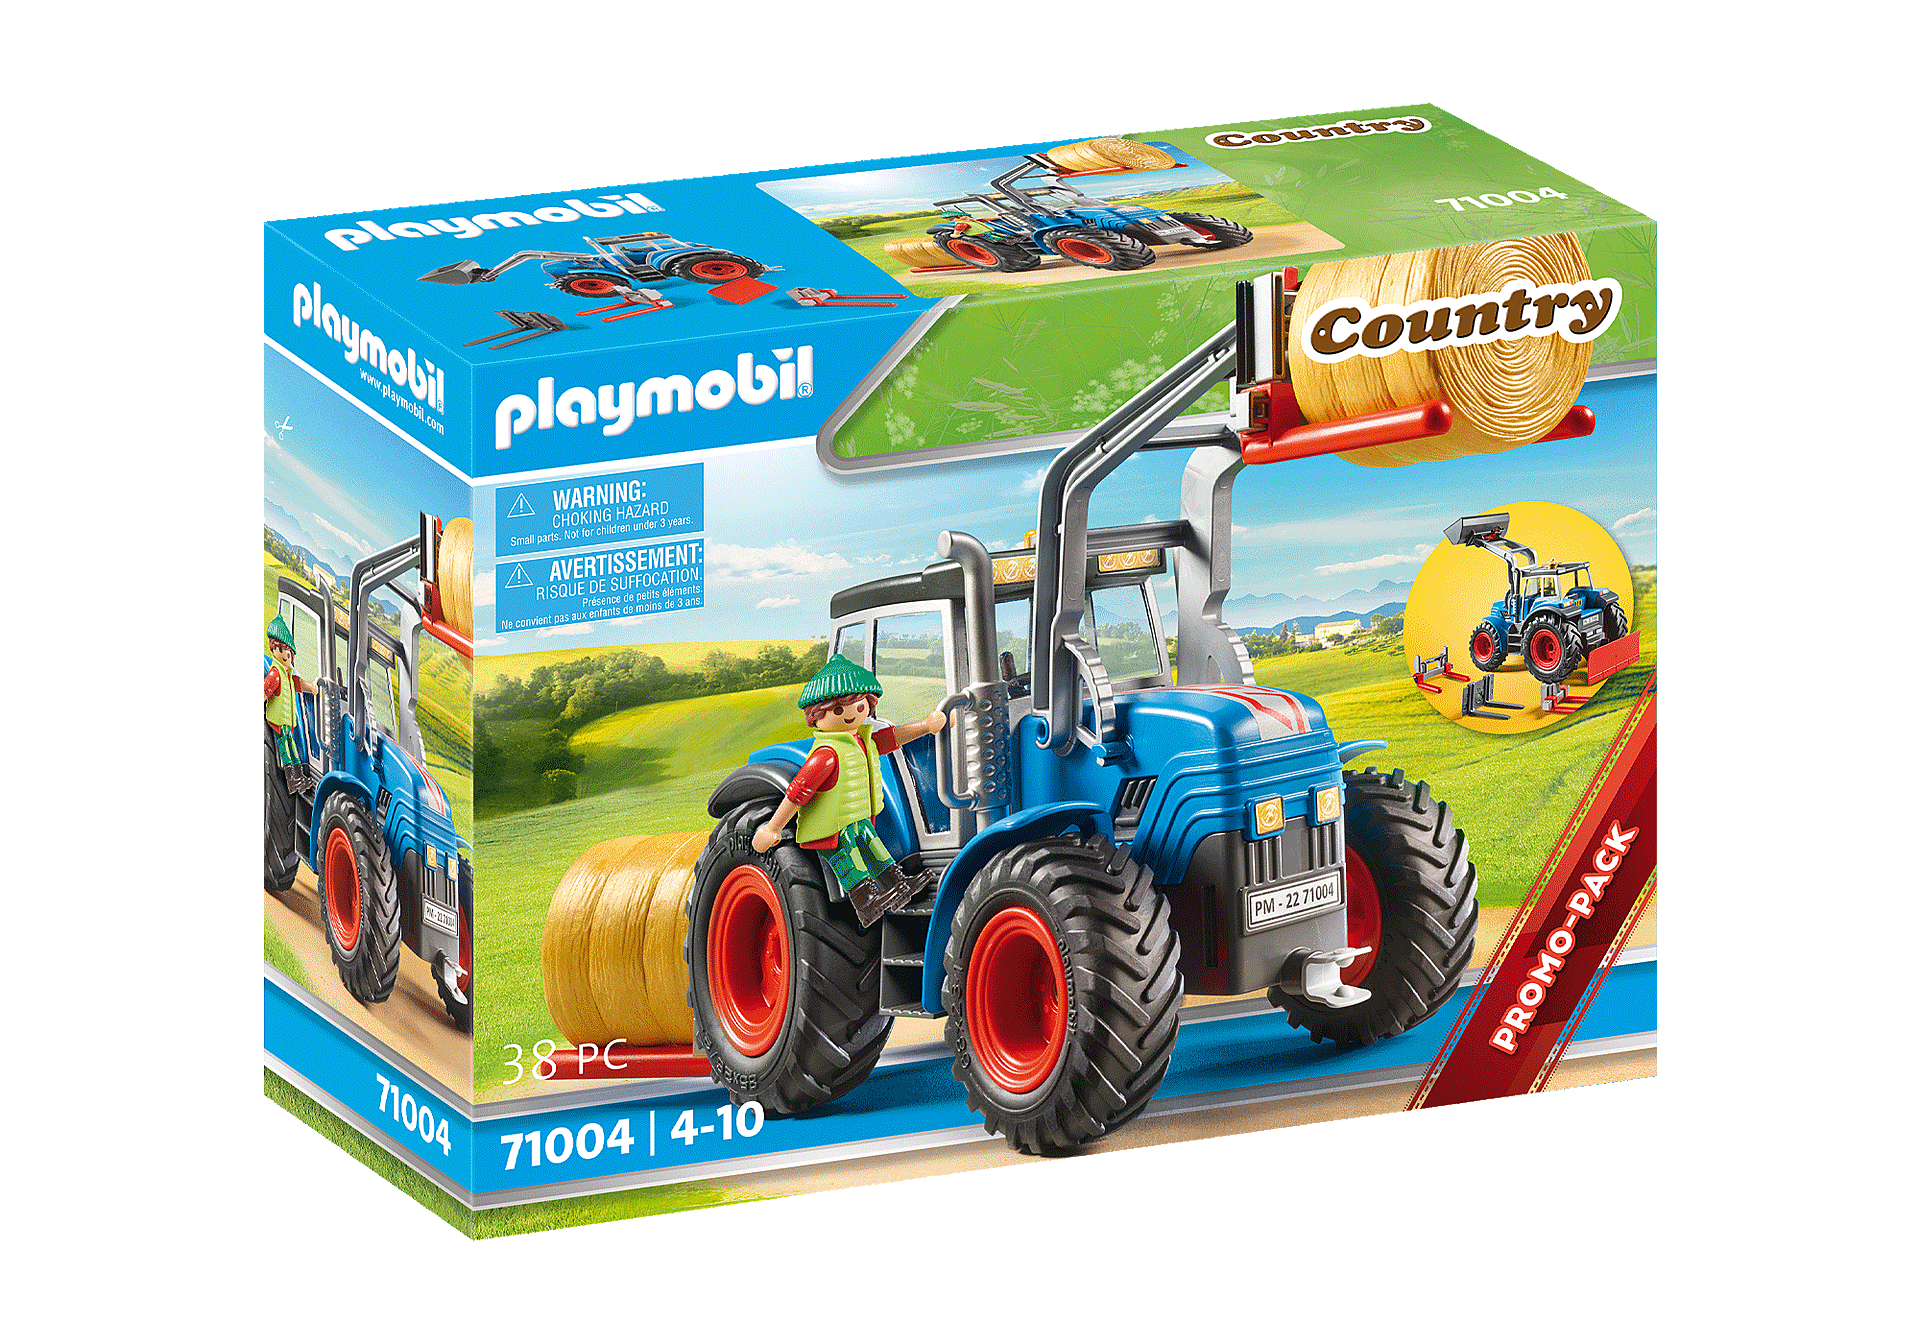 Playmobil Playmobil 71004 Country - Tracteur et fermier